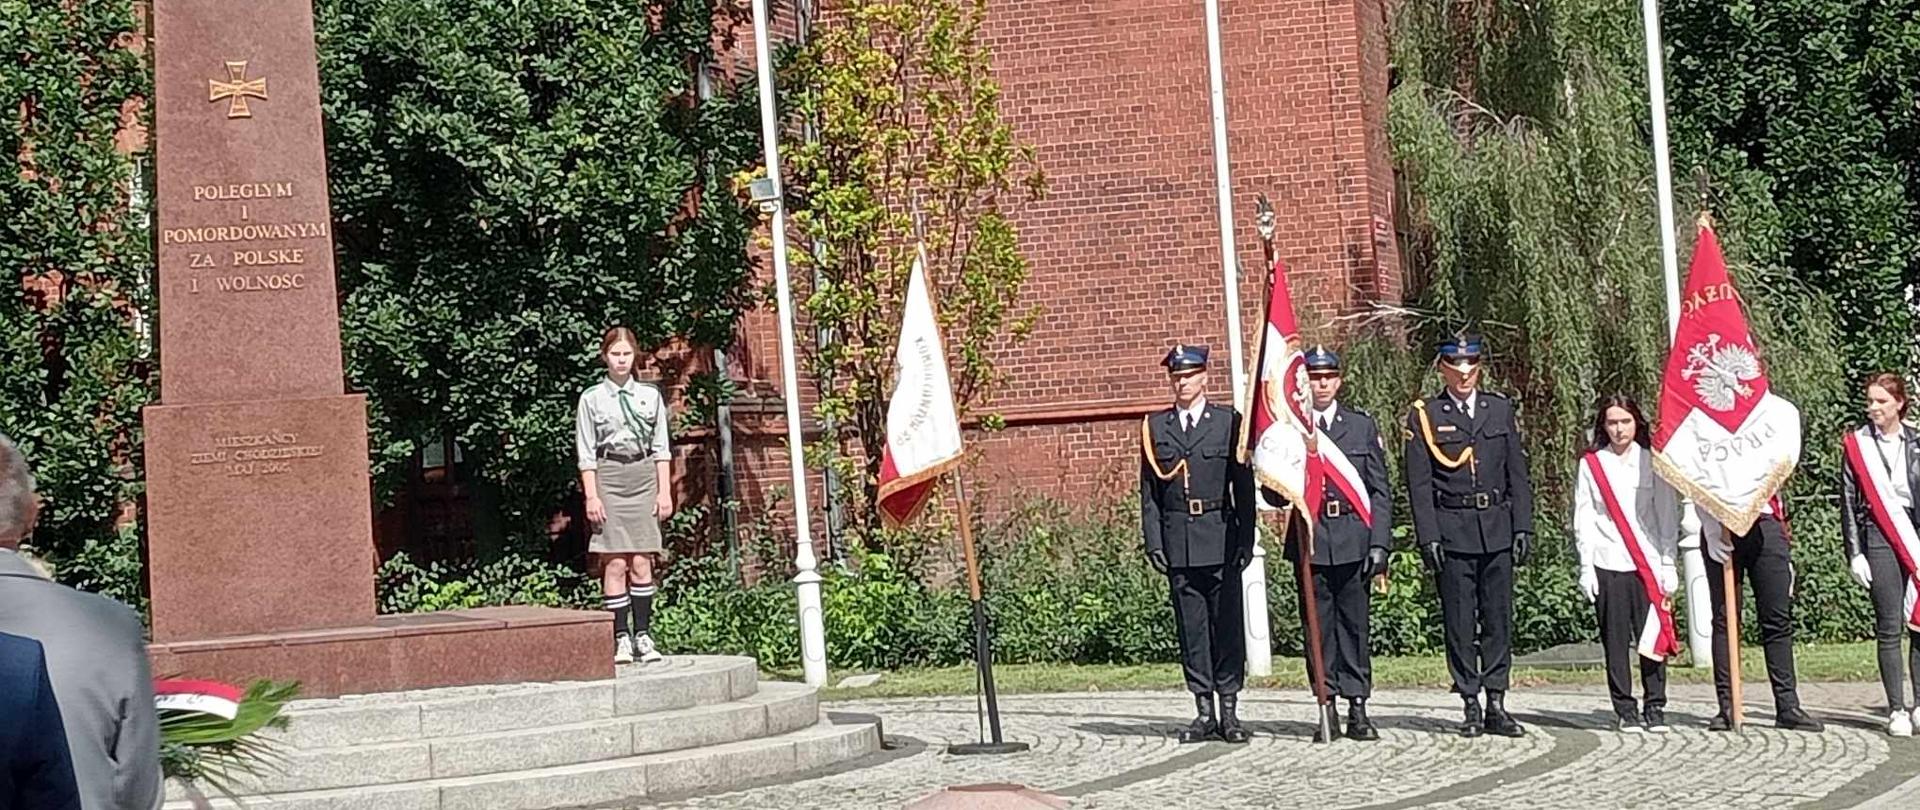 Zdjęcie przedstawia pomnik i stojące przy nim poczty sztandarowe podczas uroczystości 84. rocznicy wybuchu II wojny światowej.
W tle budynki i drzewa.
